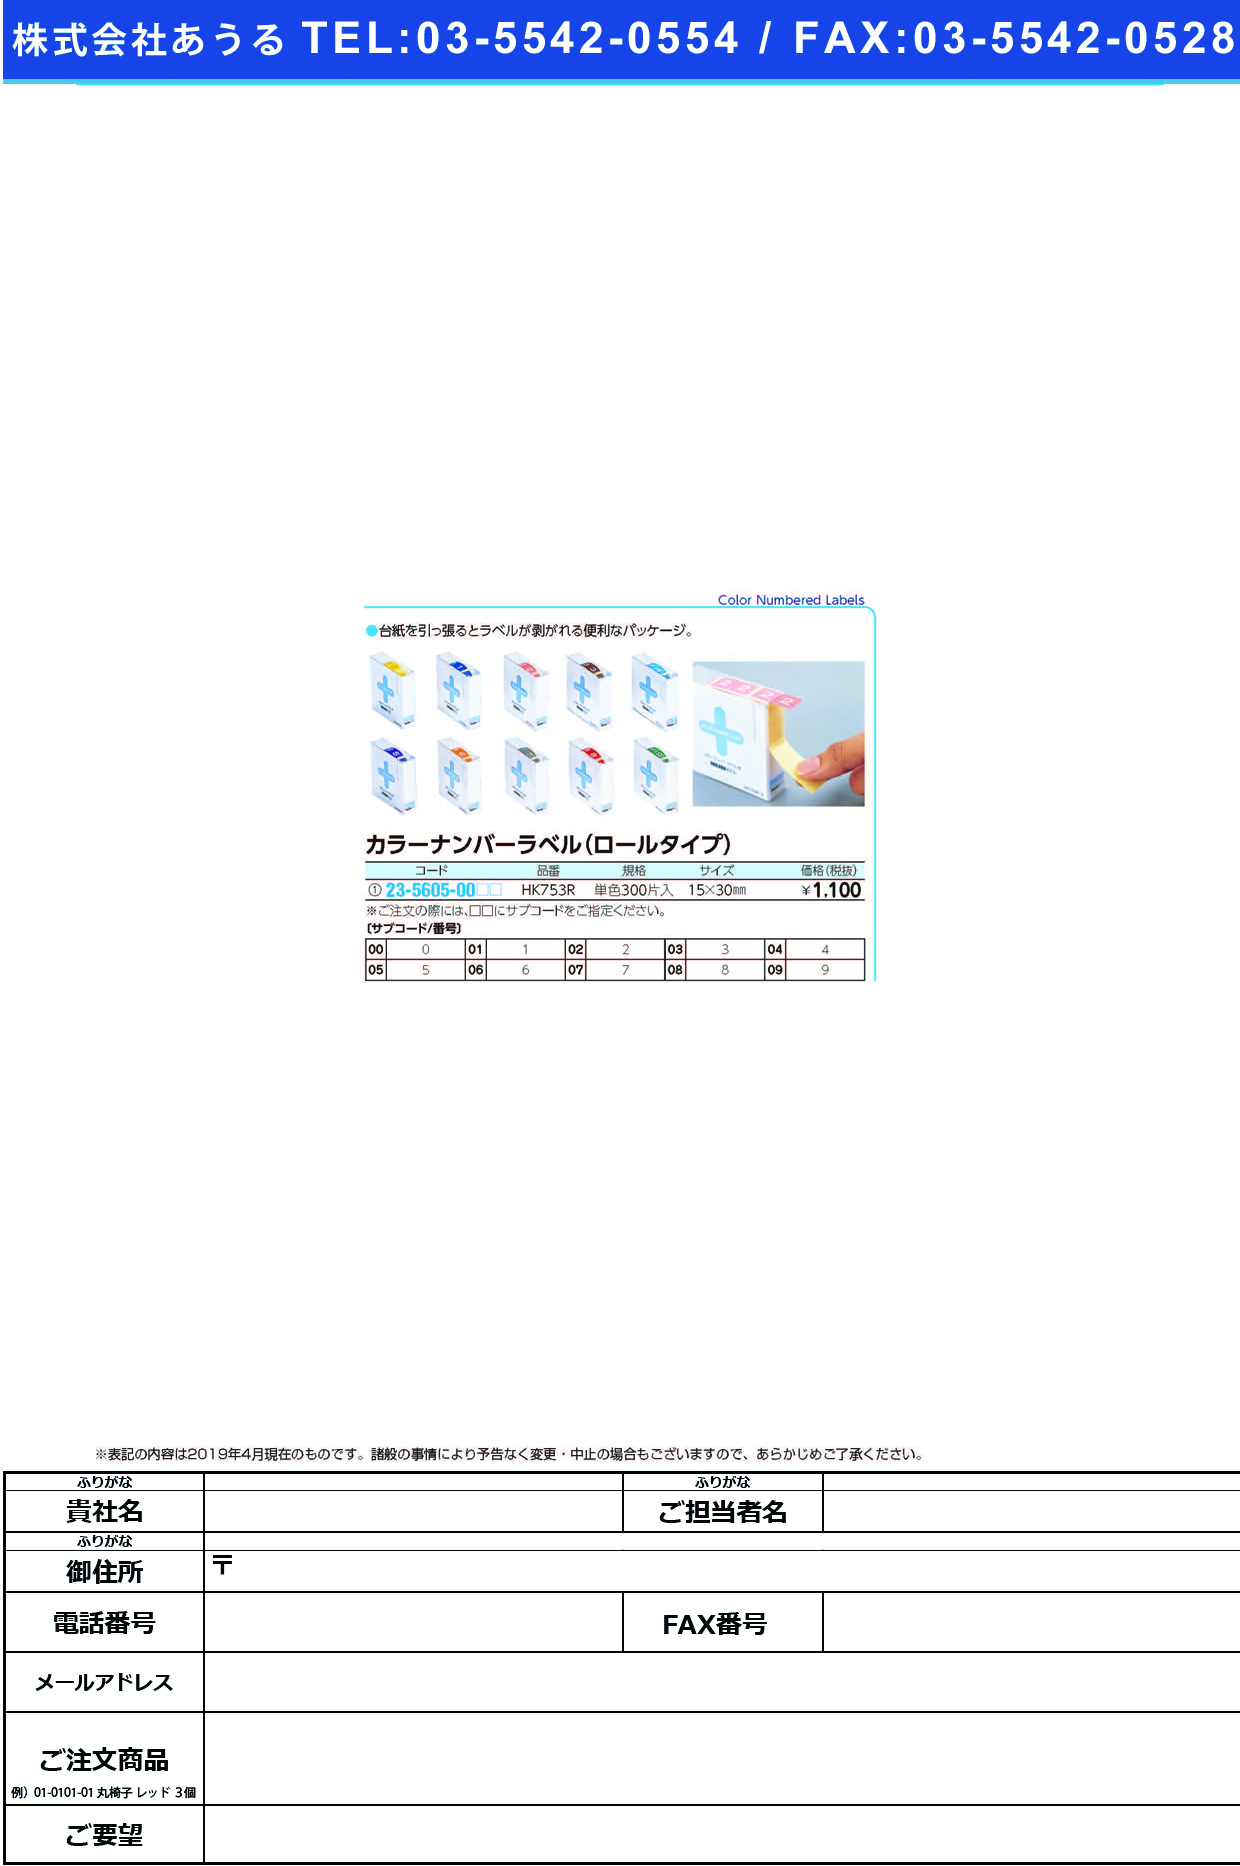 (23-5605-00)カラーナンバーラベル（Ｍ）ロール HK753R(ﾀﾝﾊﾞﾝ)300ﾍﾝｲﾘ ｶﾗｰﾅﾝﾊﾞｰﾗﾍﾞﾙMﾛｰﾙ ３(ＬＩＨＩＴＬＡＢ．)【1箱単位】【2019年カタログ商品】